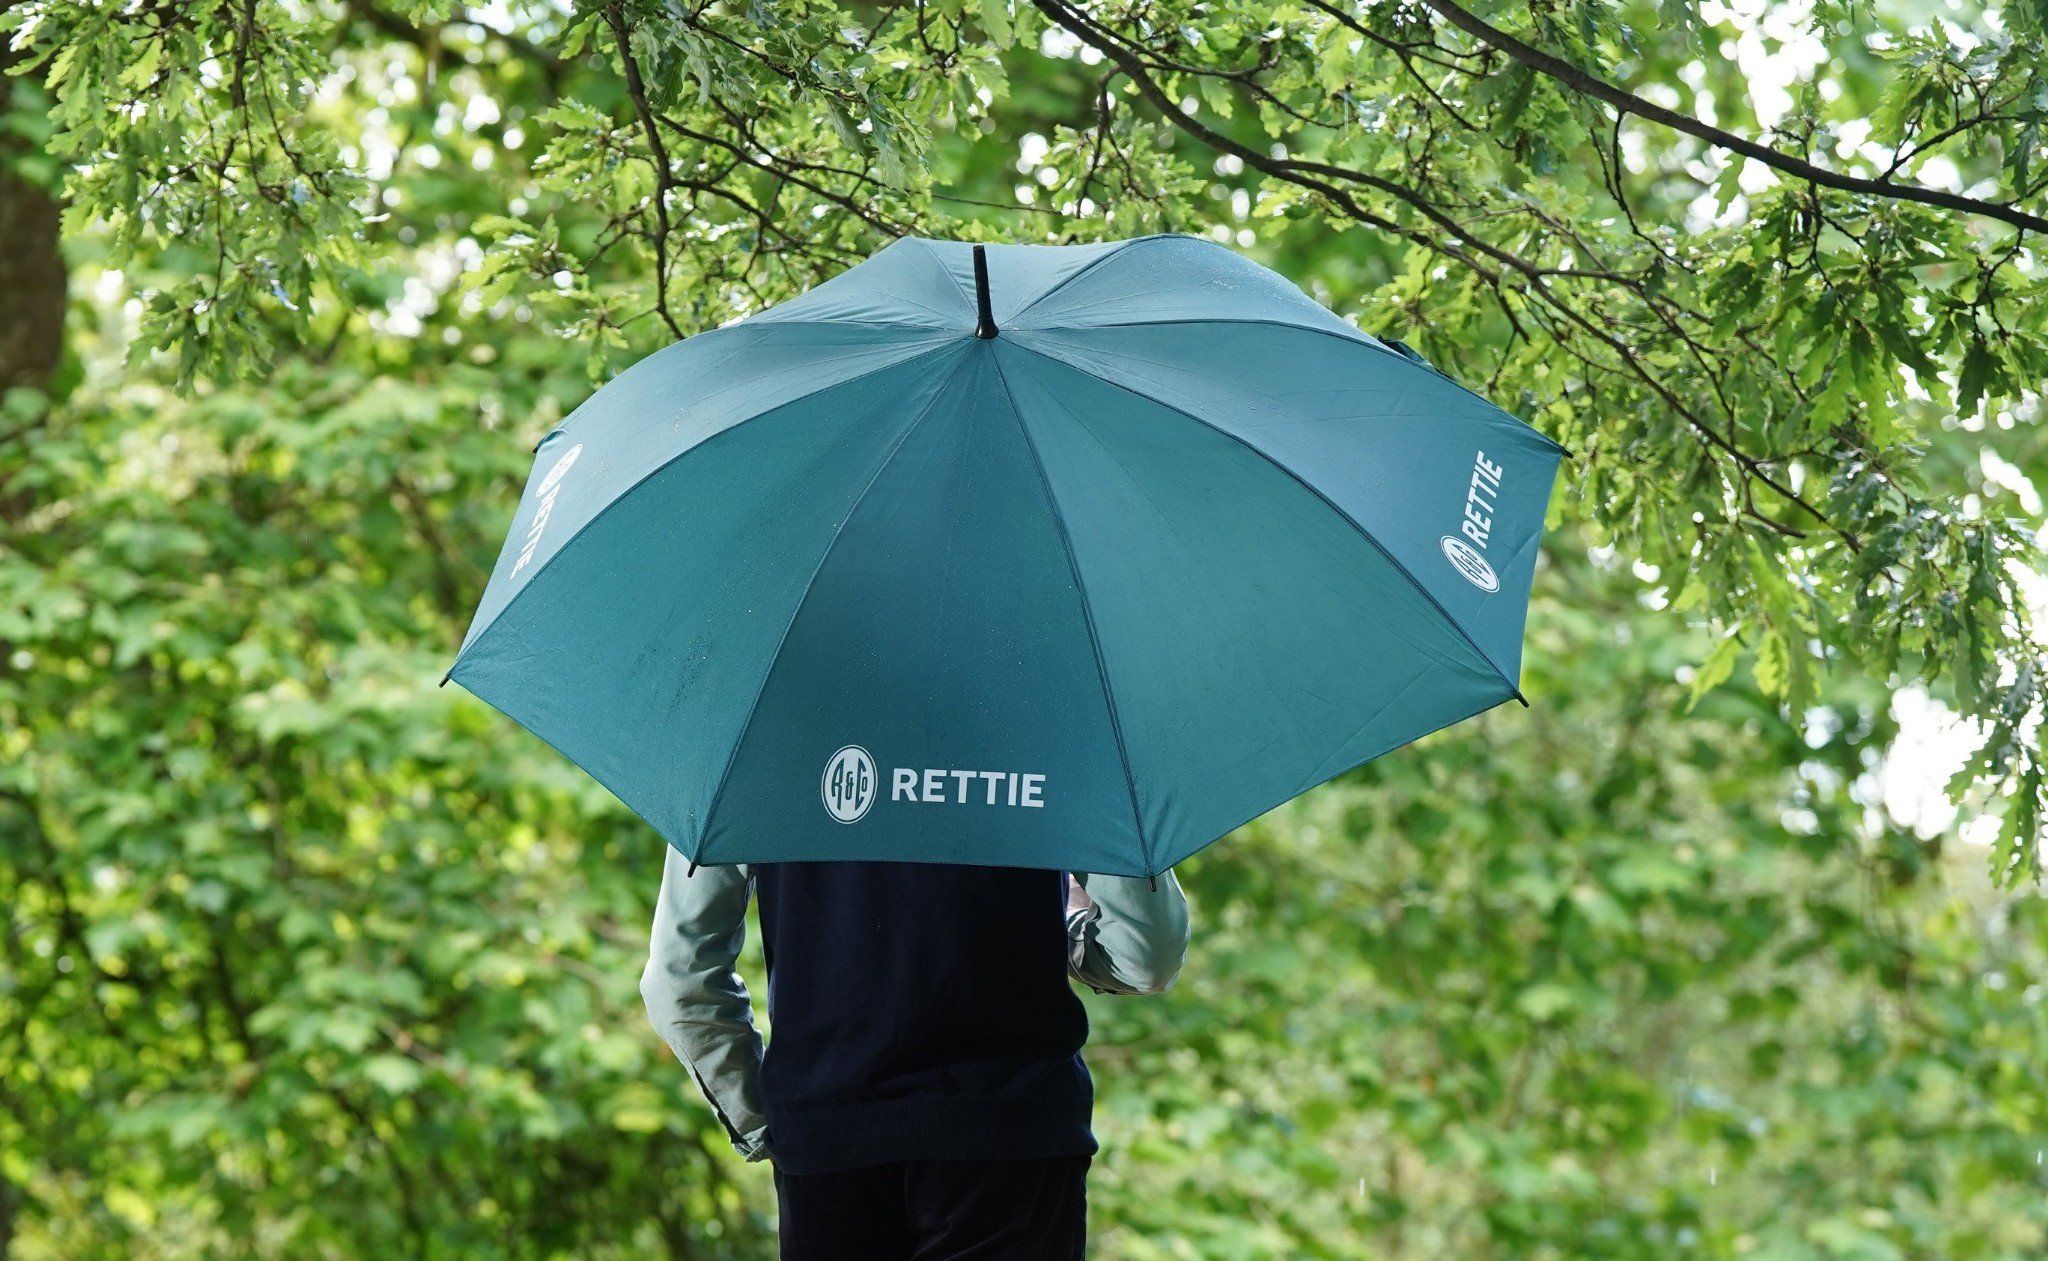 Rettie team member standing under umbrella